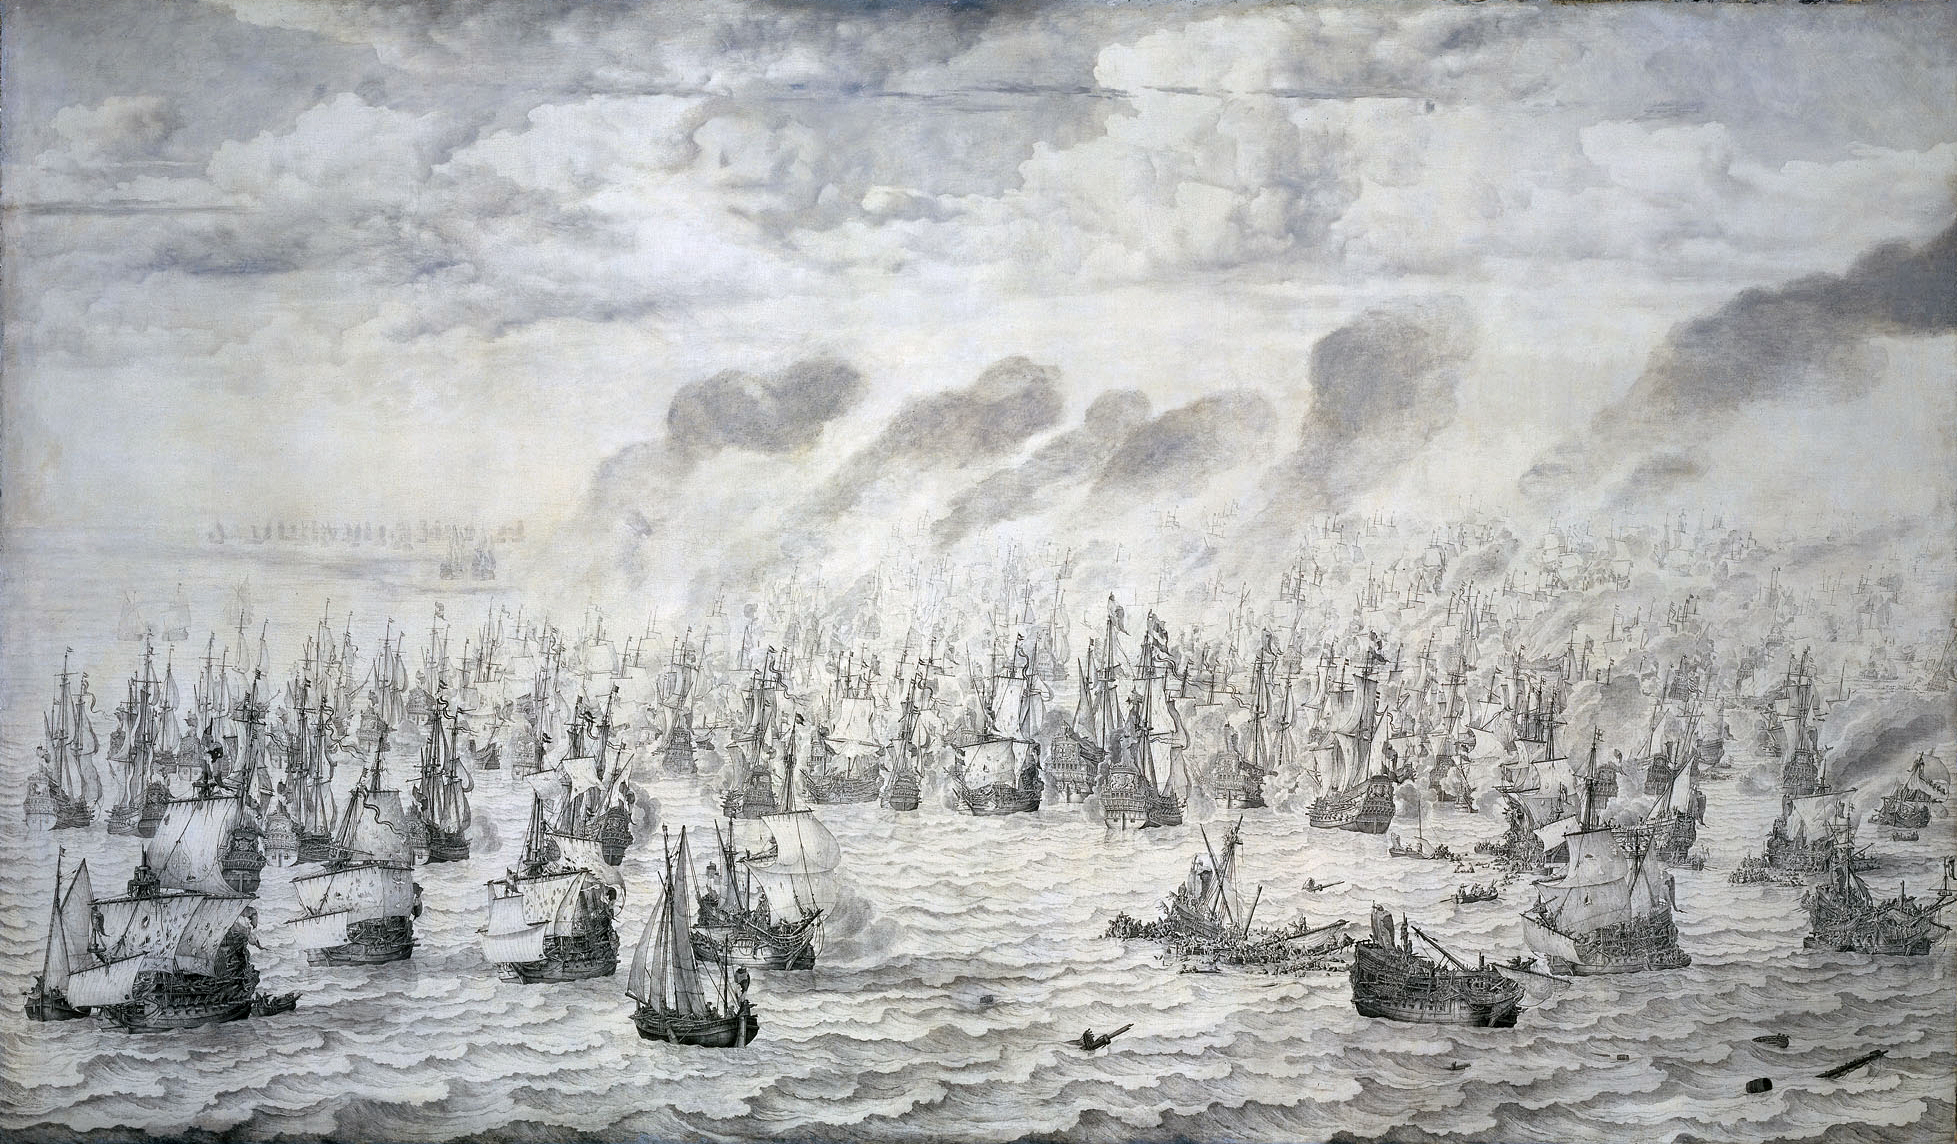 De_slag_bij_Terheide_-_The_Battle_of_Schevening_-_August_10_1653_(Willem_van_de_Velde_I,_1657).jpg